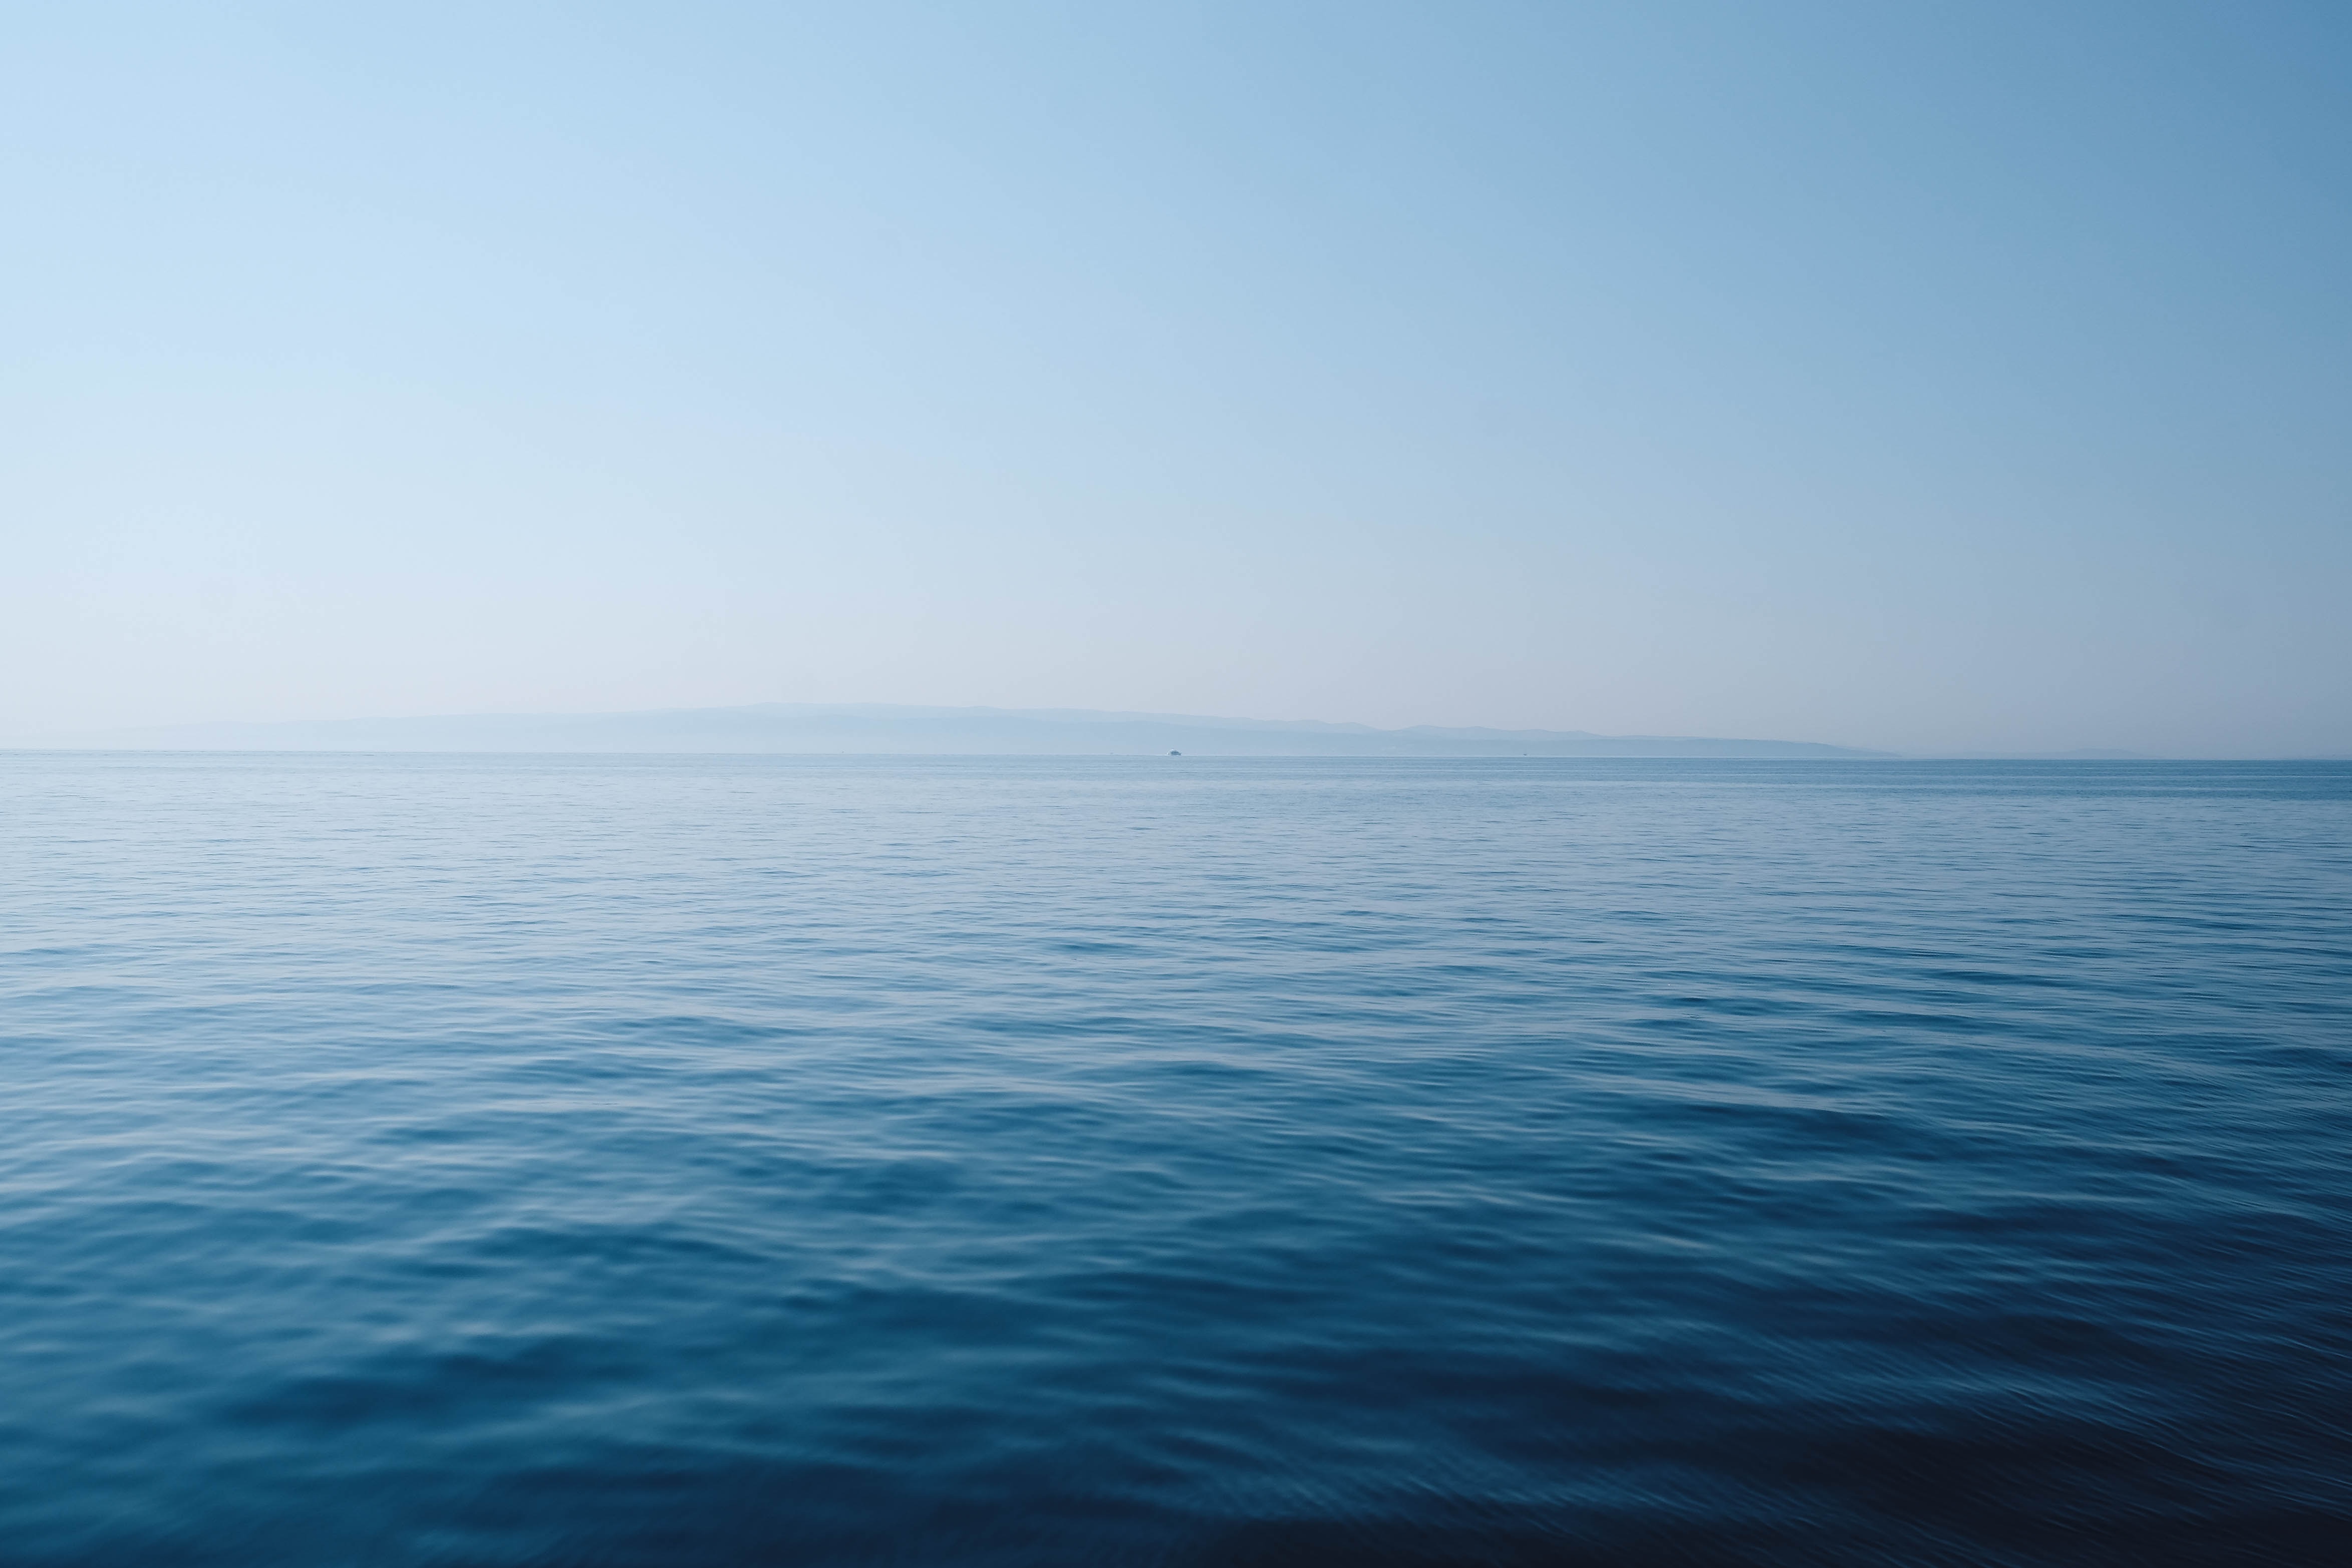 Μεσόγειος: Ρεκόρ θερμοκρασίας κατέγραψε το κέντρο θαλάσσιων ερευνών της Ισπανίας